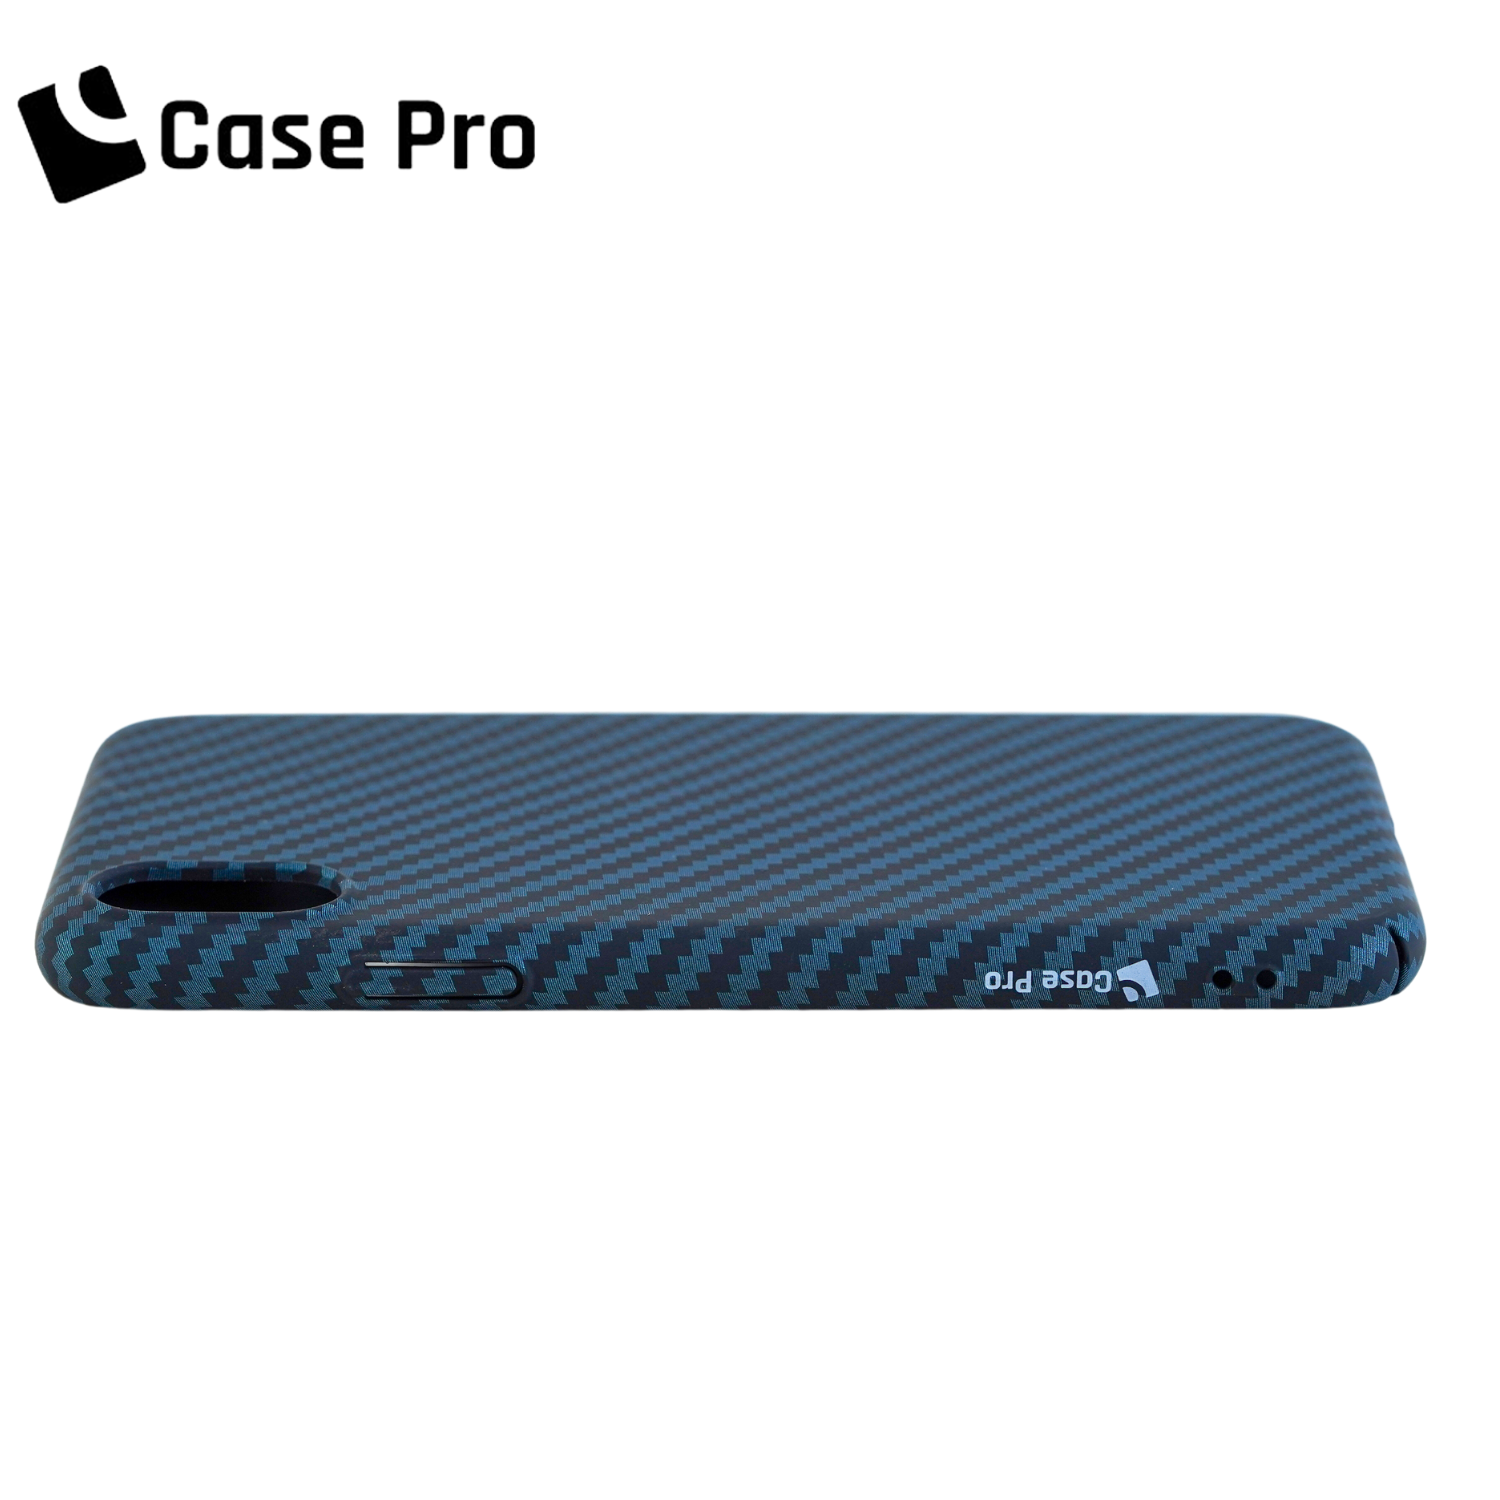 CASE PRO iPhone XS Max (Carbon Pro)